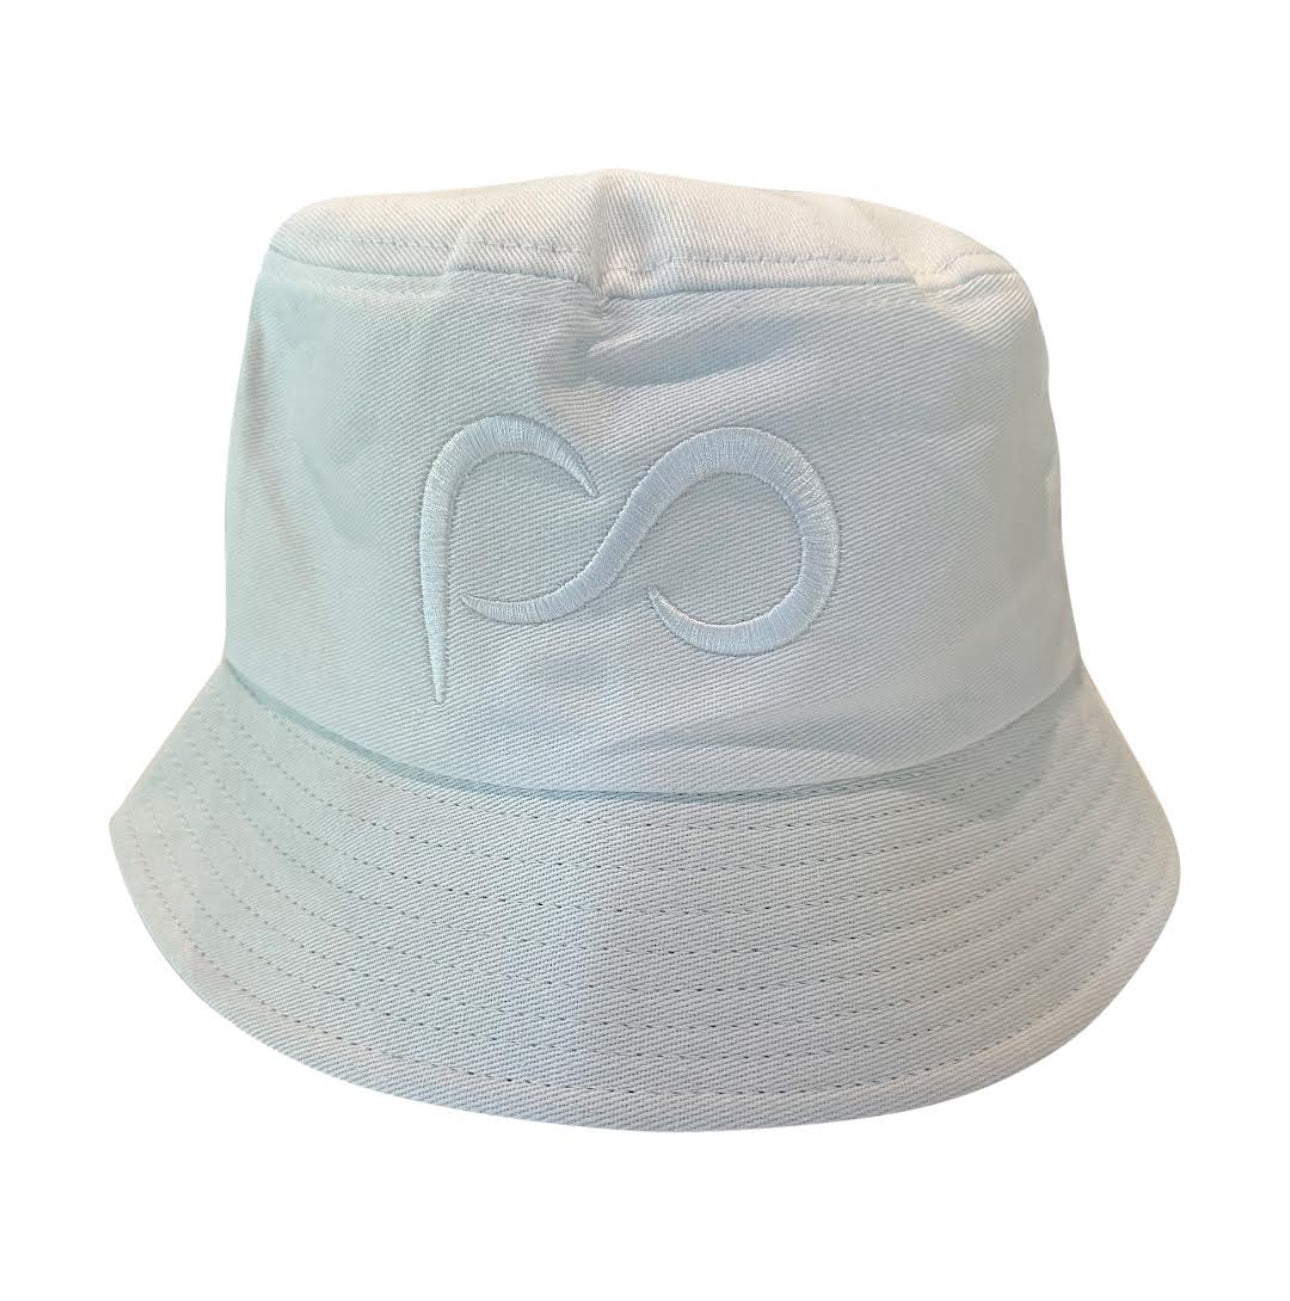 White PO Bucket Hat with White PO logo